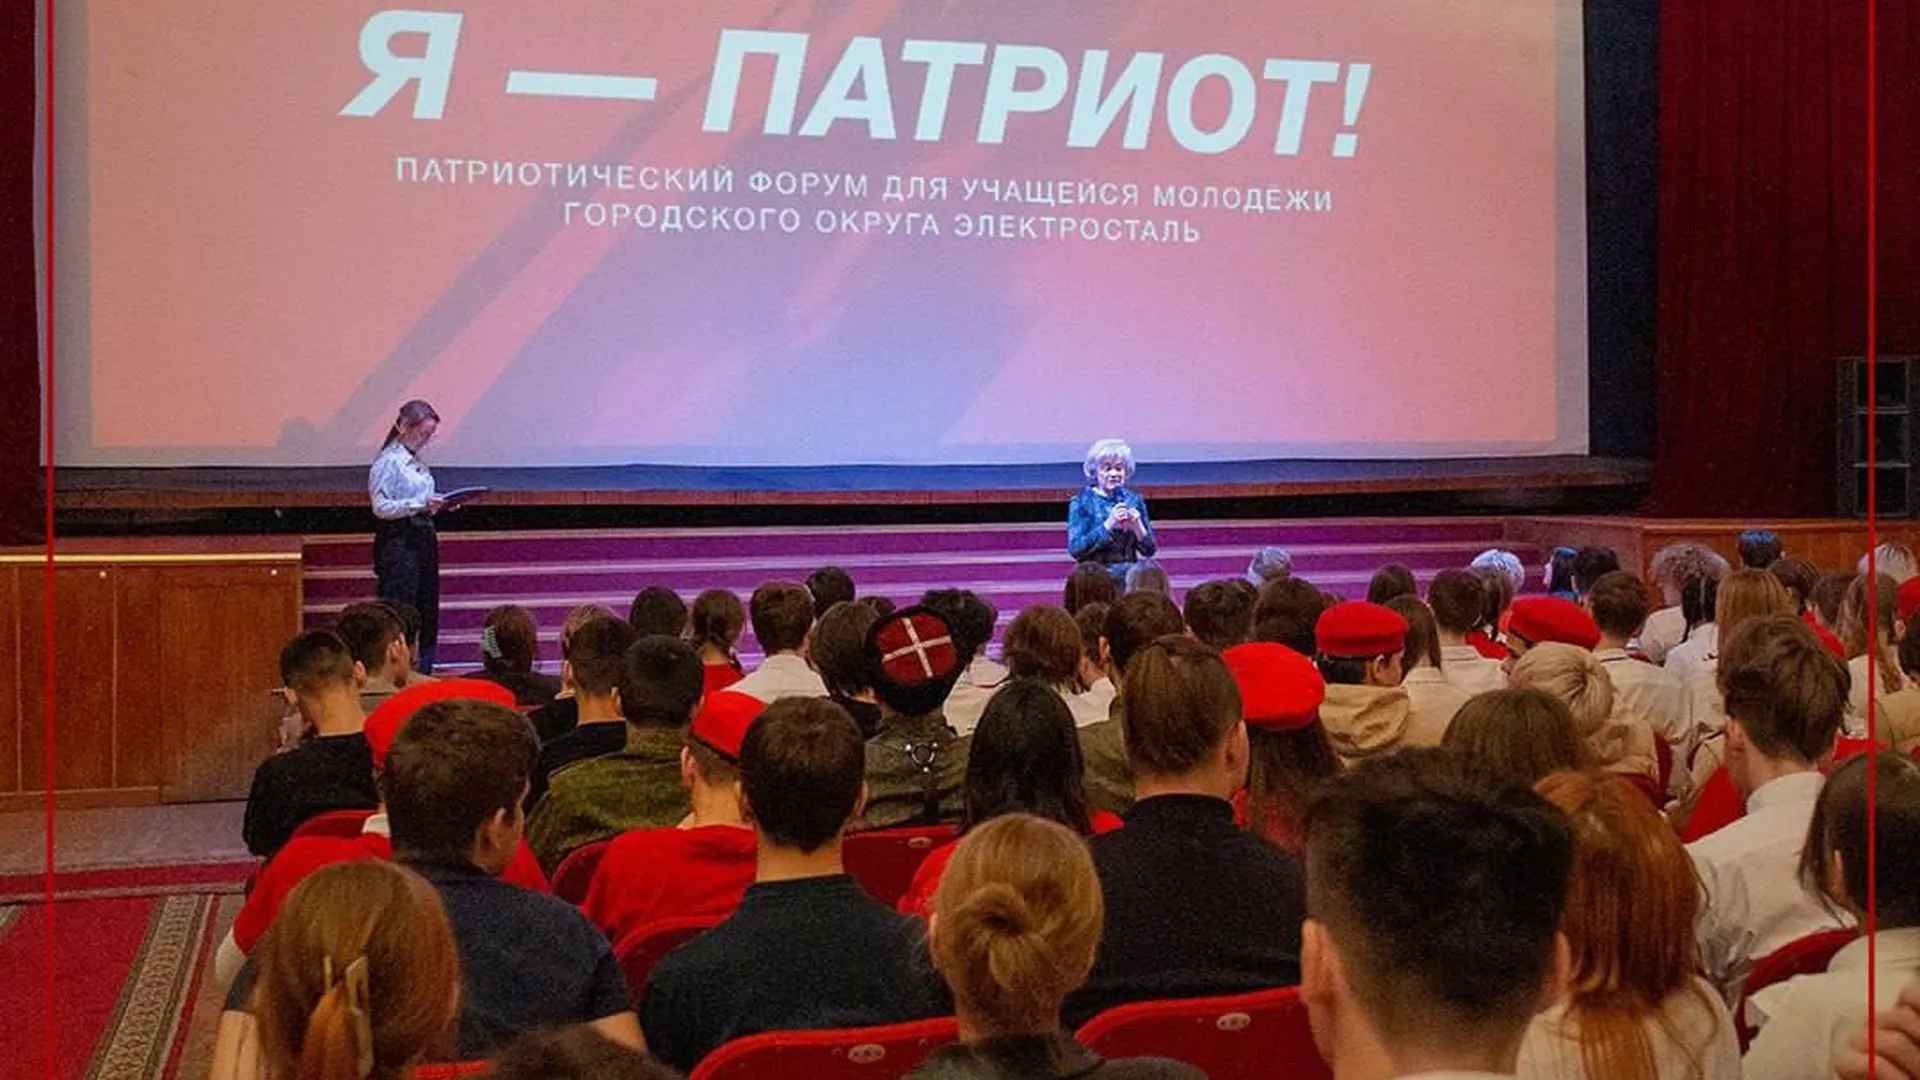 Фестиваль «Я — патриот!» состоялся в Электростали